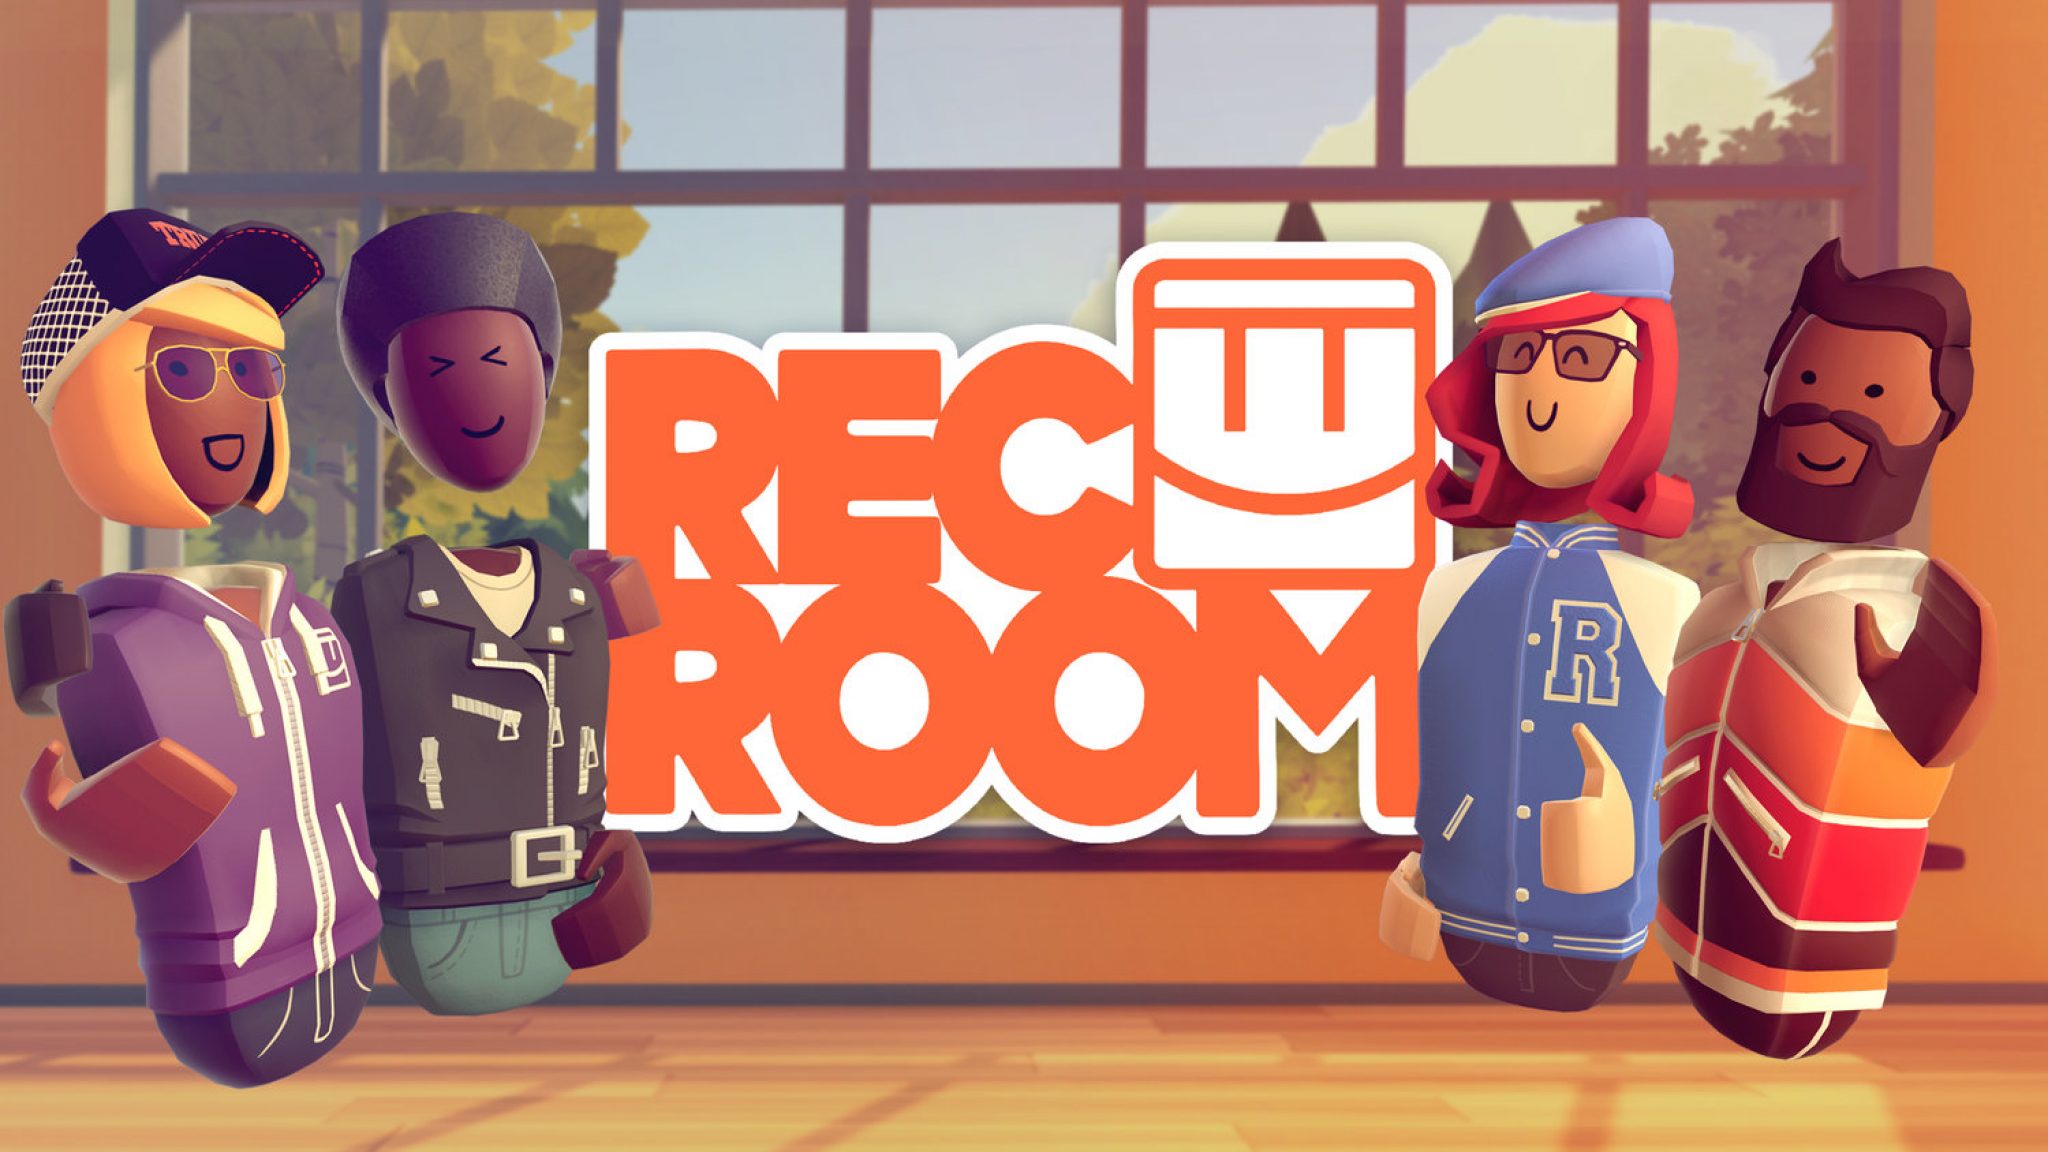 Rec Room 2048x1152 